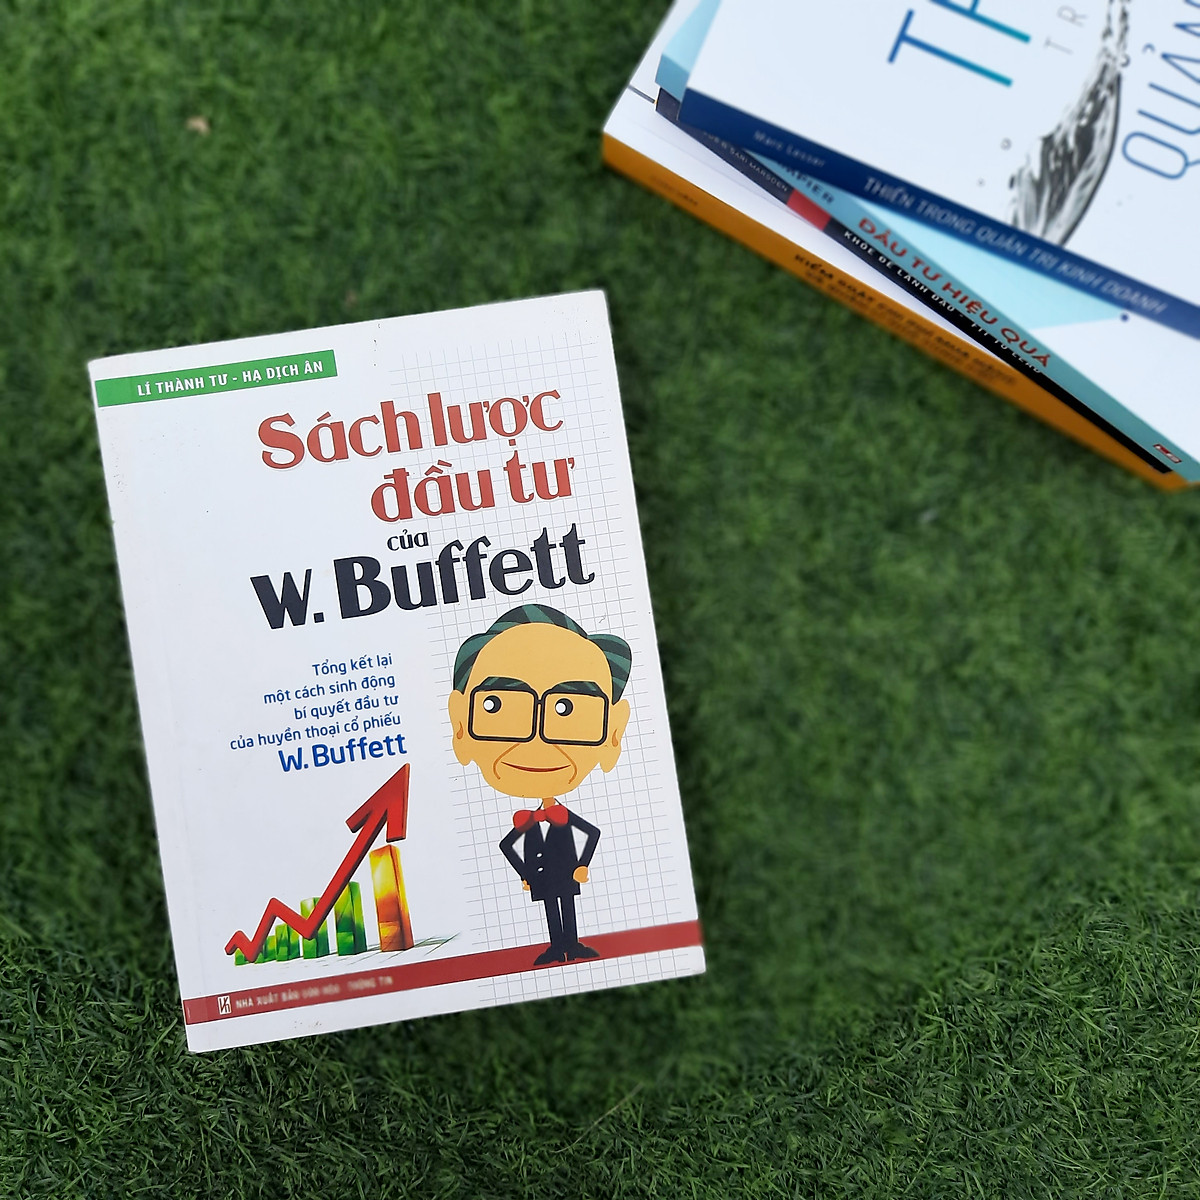 Sách: Combo Sách 5 Cuốn: Những Sát Thủ Hàng Loạt Trong Giới Tài Chính + Sách Lược Đầu Tư Của W.Buffett + Đầu Tư Hiệu Quả + Tư Duy Về Tiền Bạc + Đừng Để Tiền Ngủ Yên Trong Túi (Tái Bản)